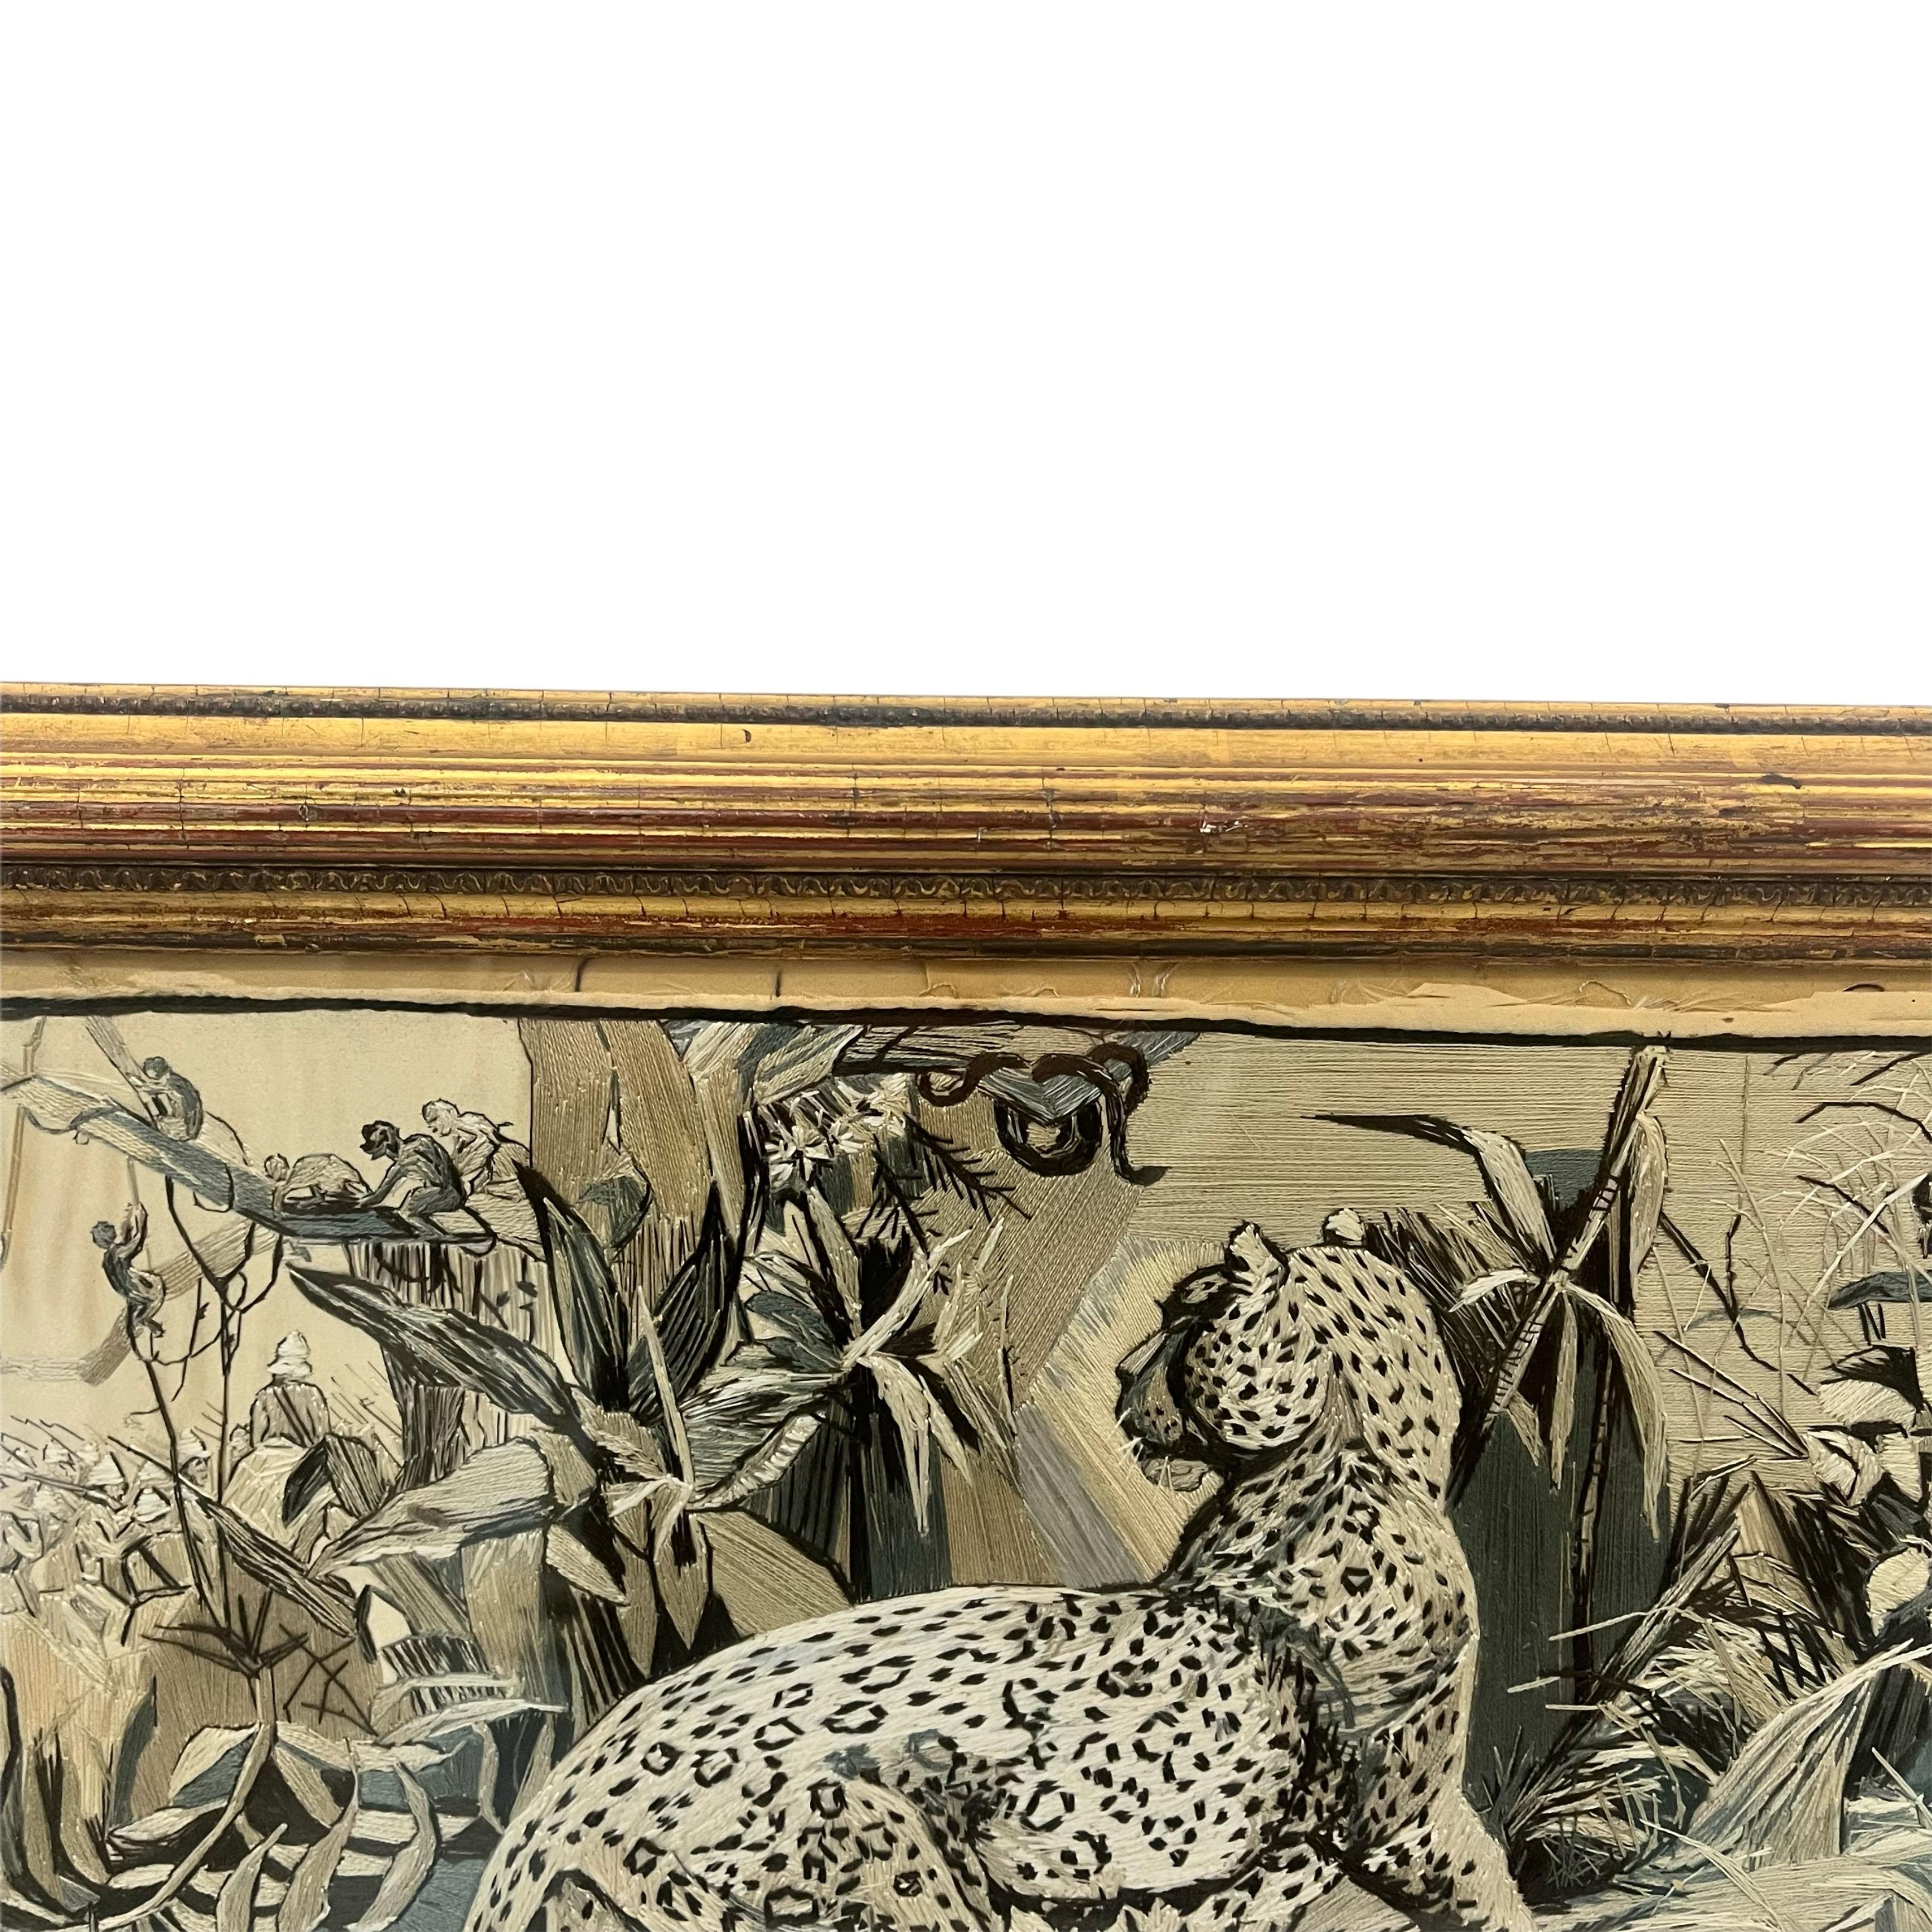 Sous verre, représentant deux léopards regardant vers l'arrière-plan, où un groupe de soldats est rassemblé, des singes et des serpents se réfugient dans les arbres au-dessus. En dessous, la phrase 